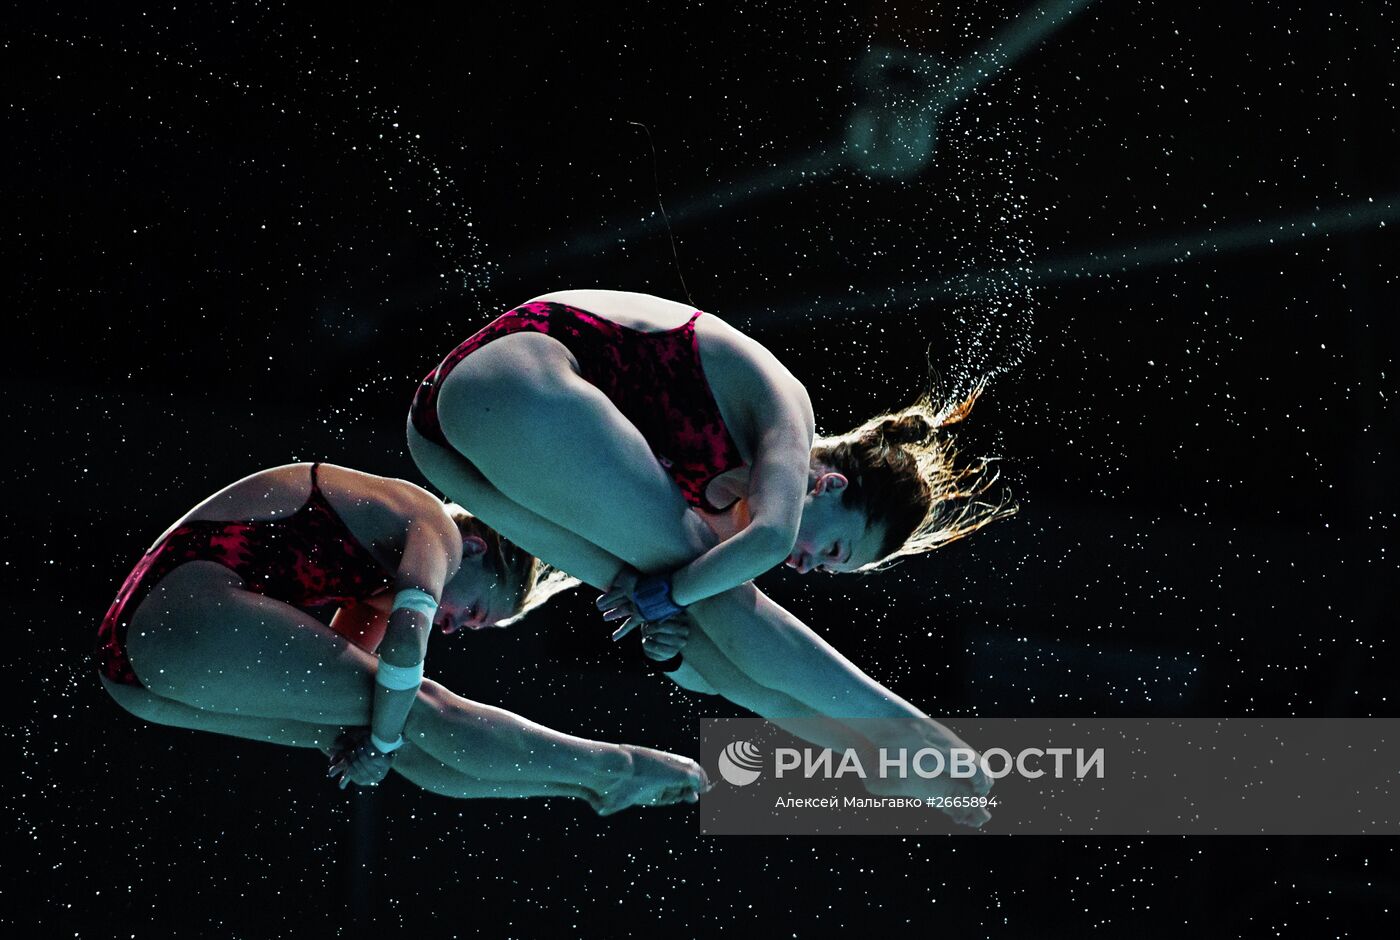 Чемпионат мира FINA 2015. Синхронные прыжки в воду. Женщины. Вышка 10 м. Предварительный раунд